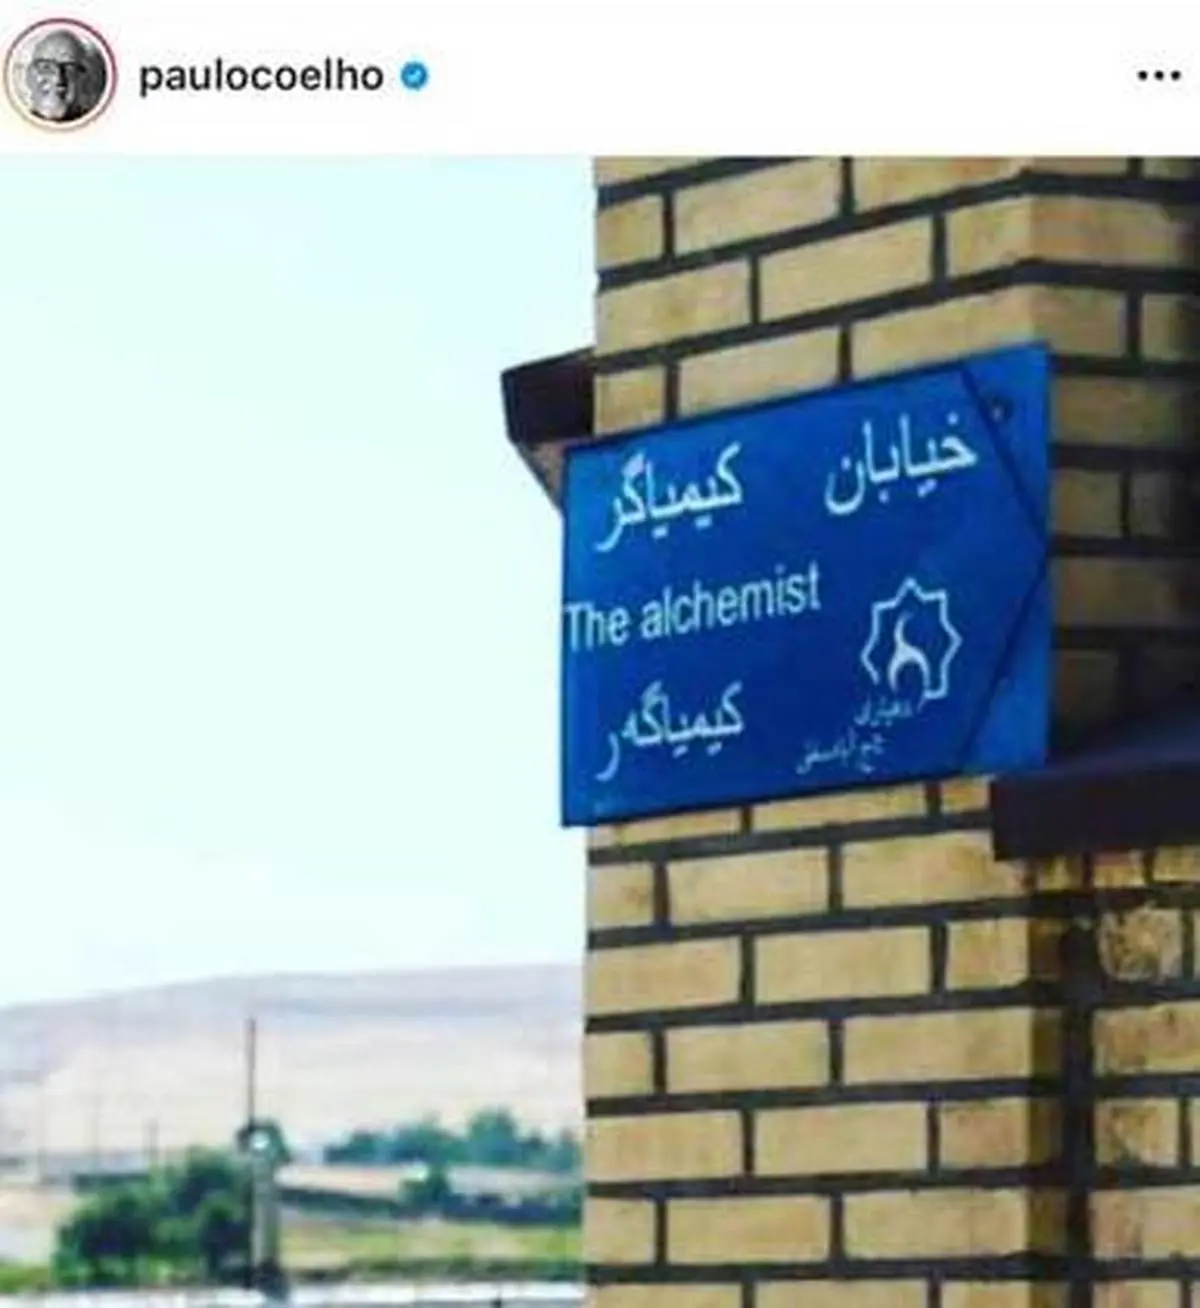 ذوق زدگی پائولو کوئیلو با انتشار عکسی از ایران| نام کتاب پائولو کوئیلو در روستای رسول آباد همدان+عکس

